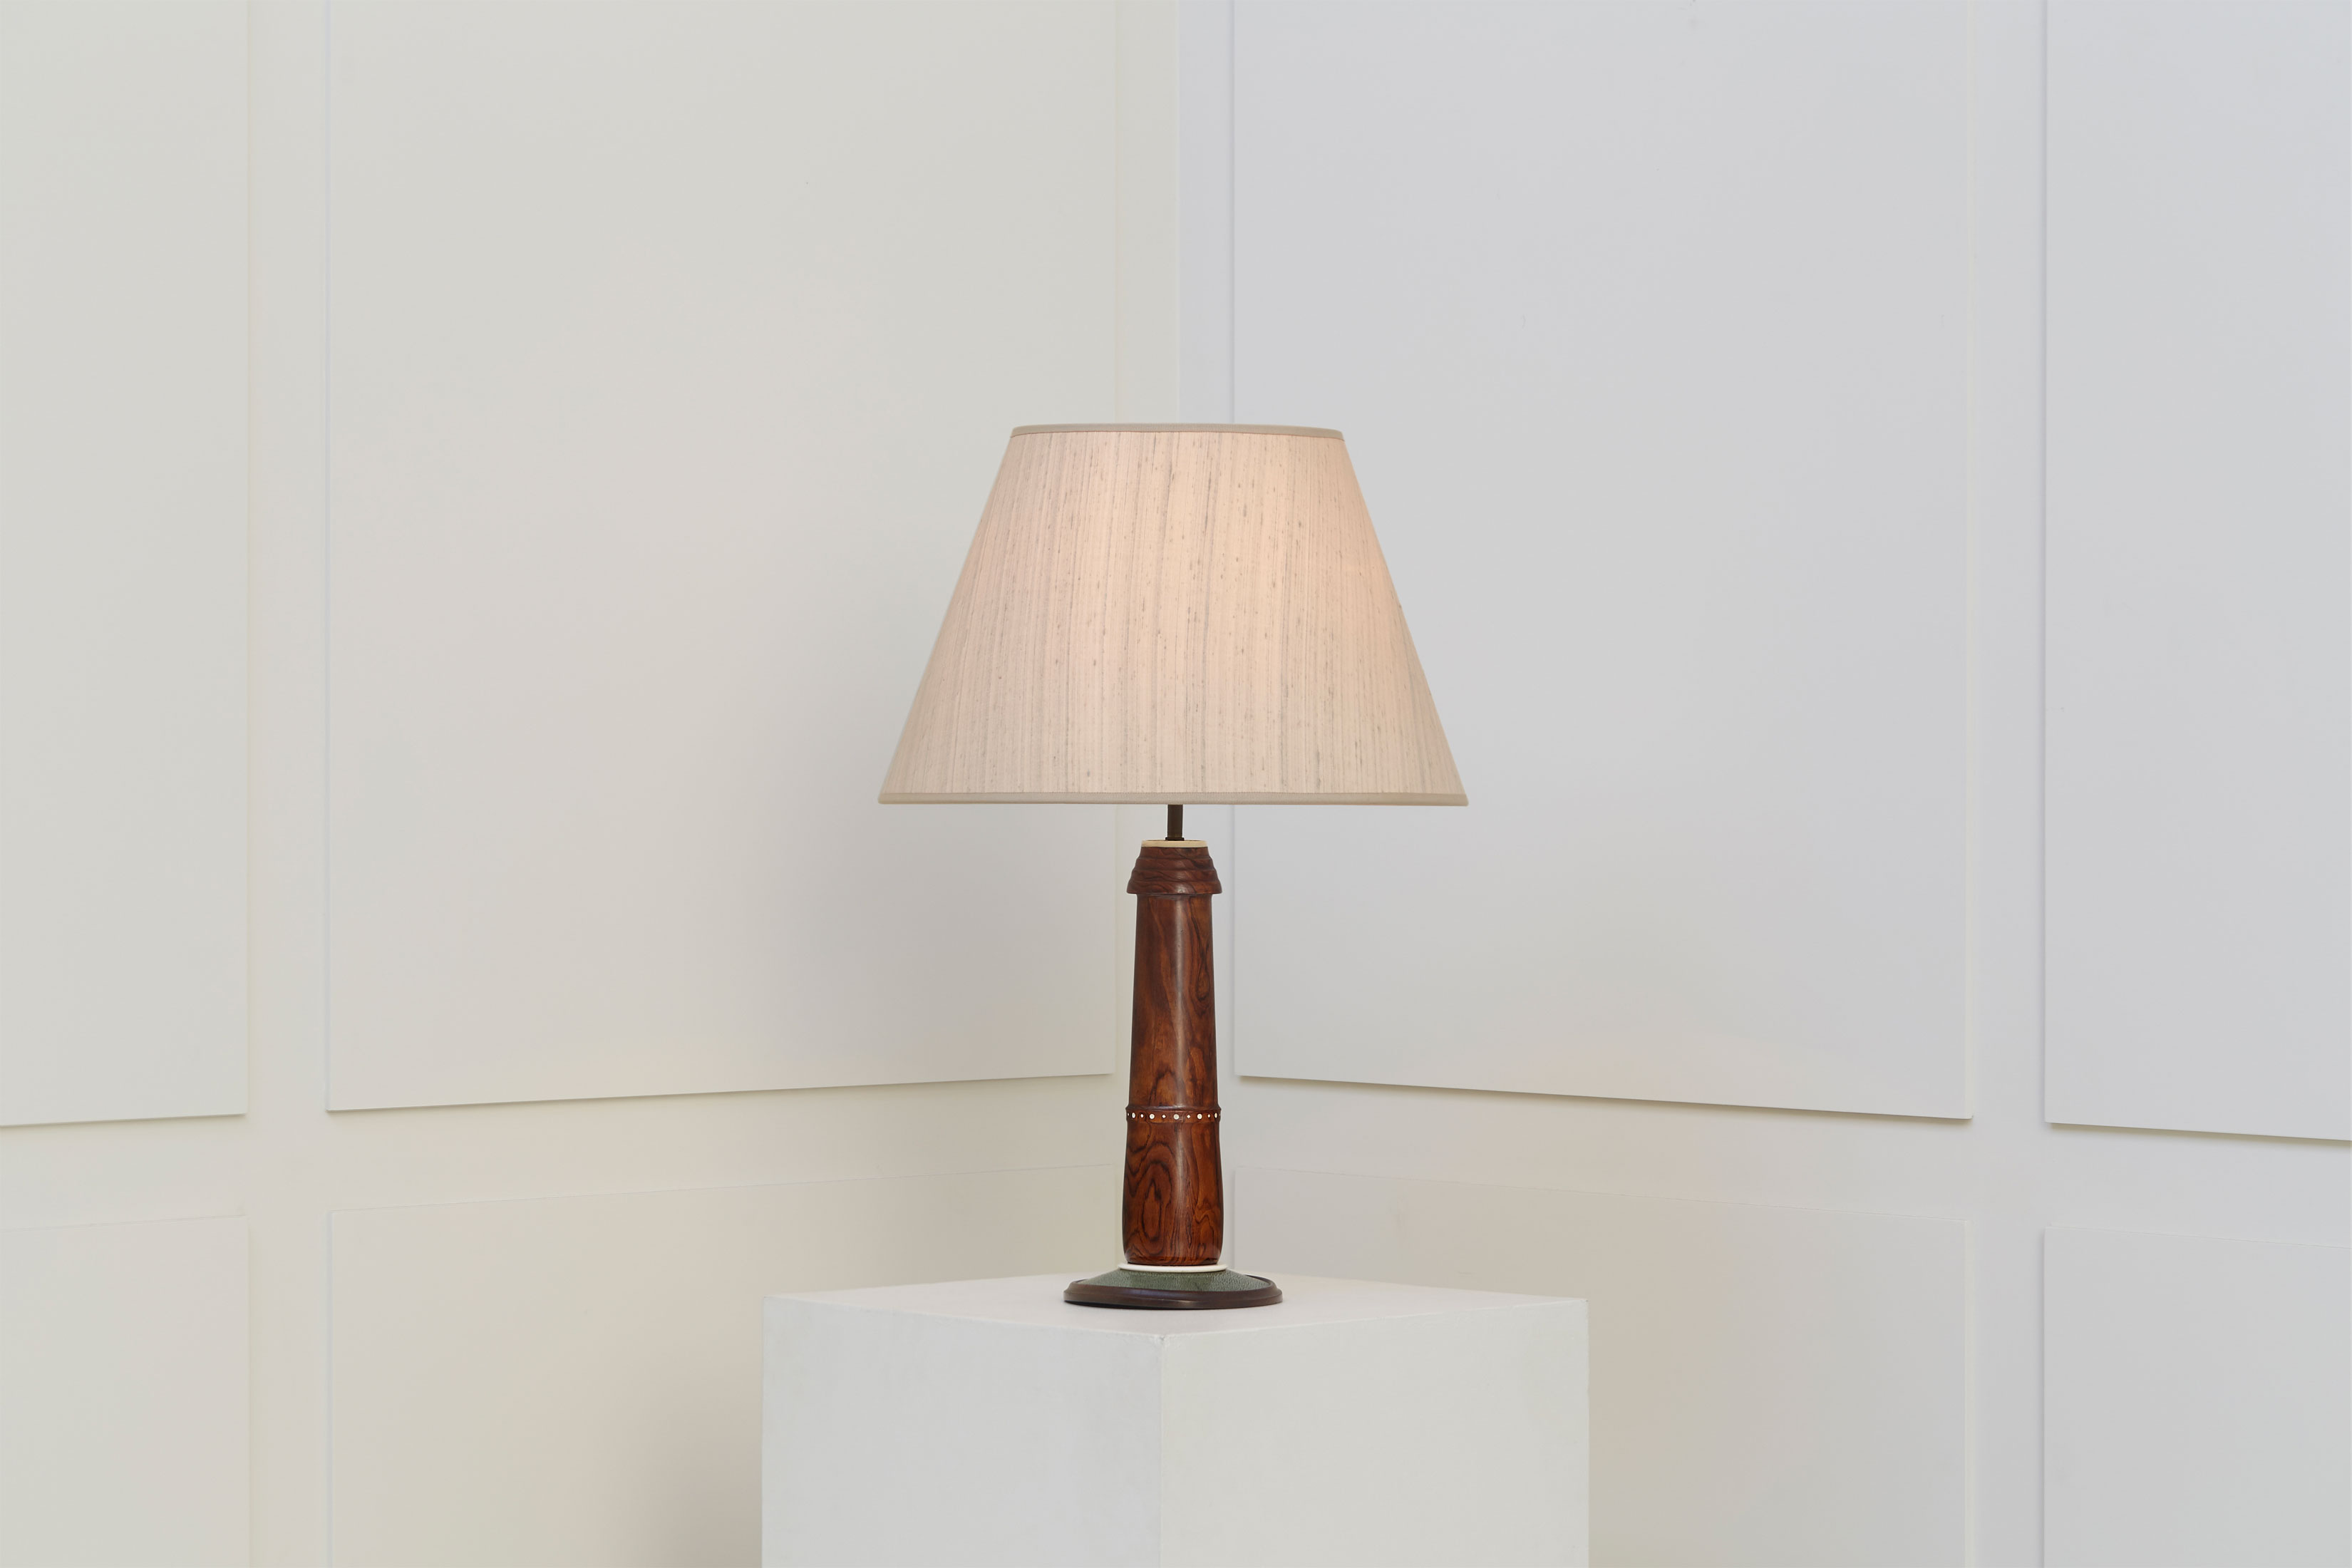 Clément Rousseau, Rare lampe, vue 02